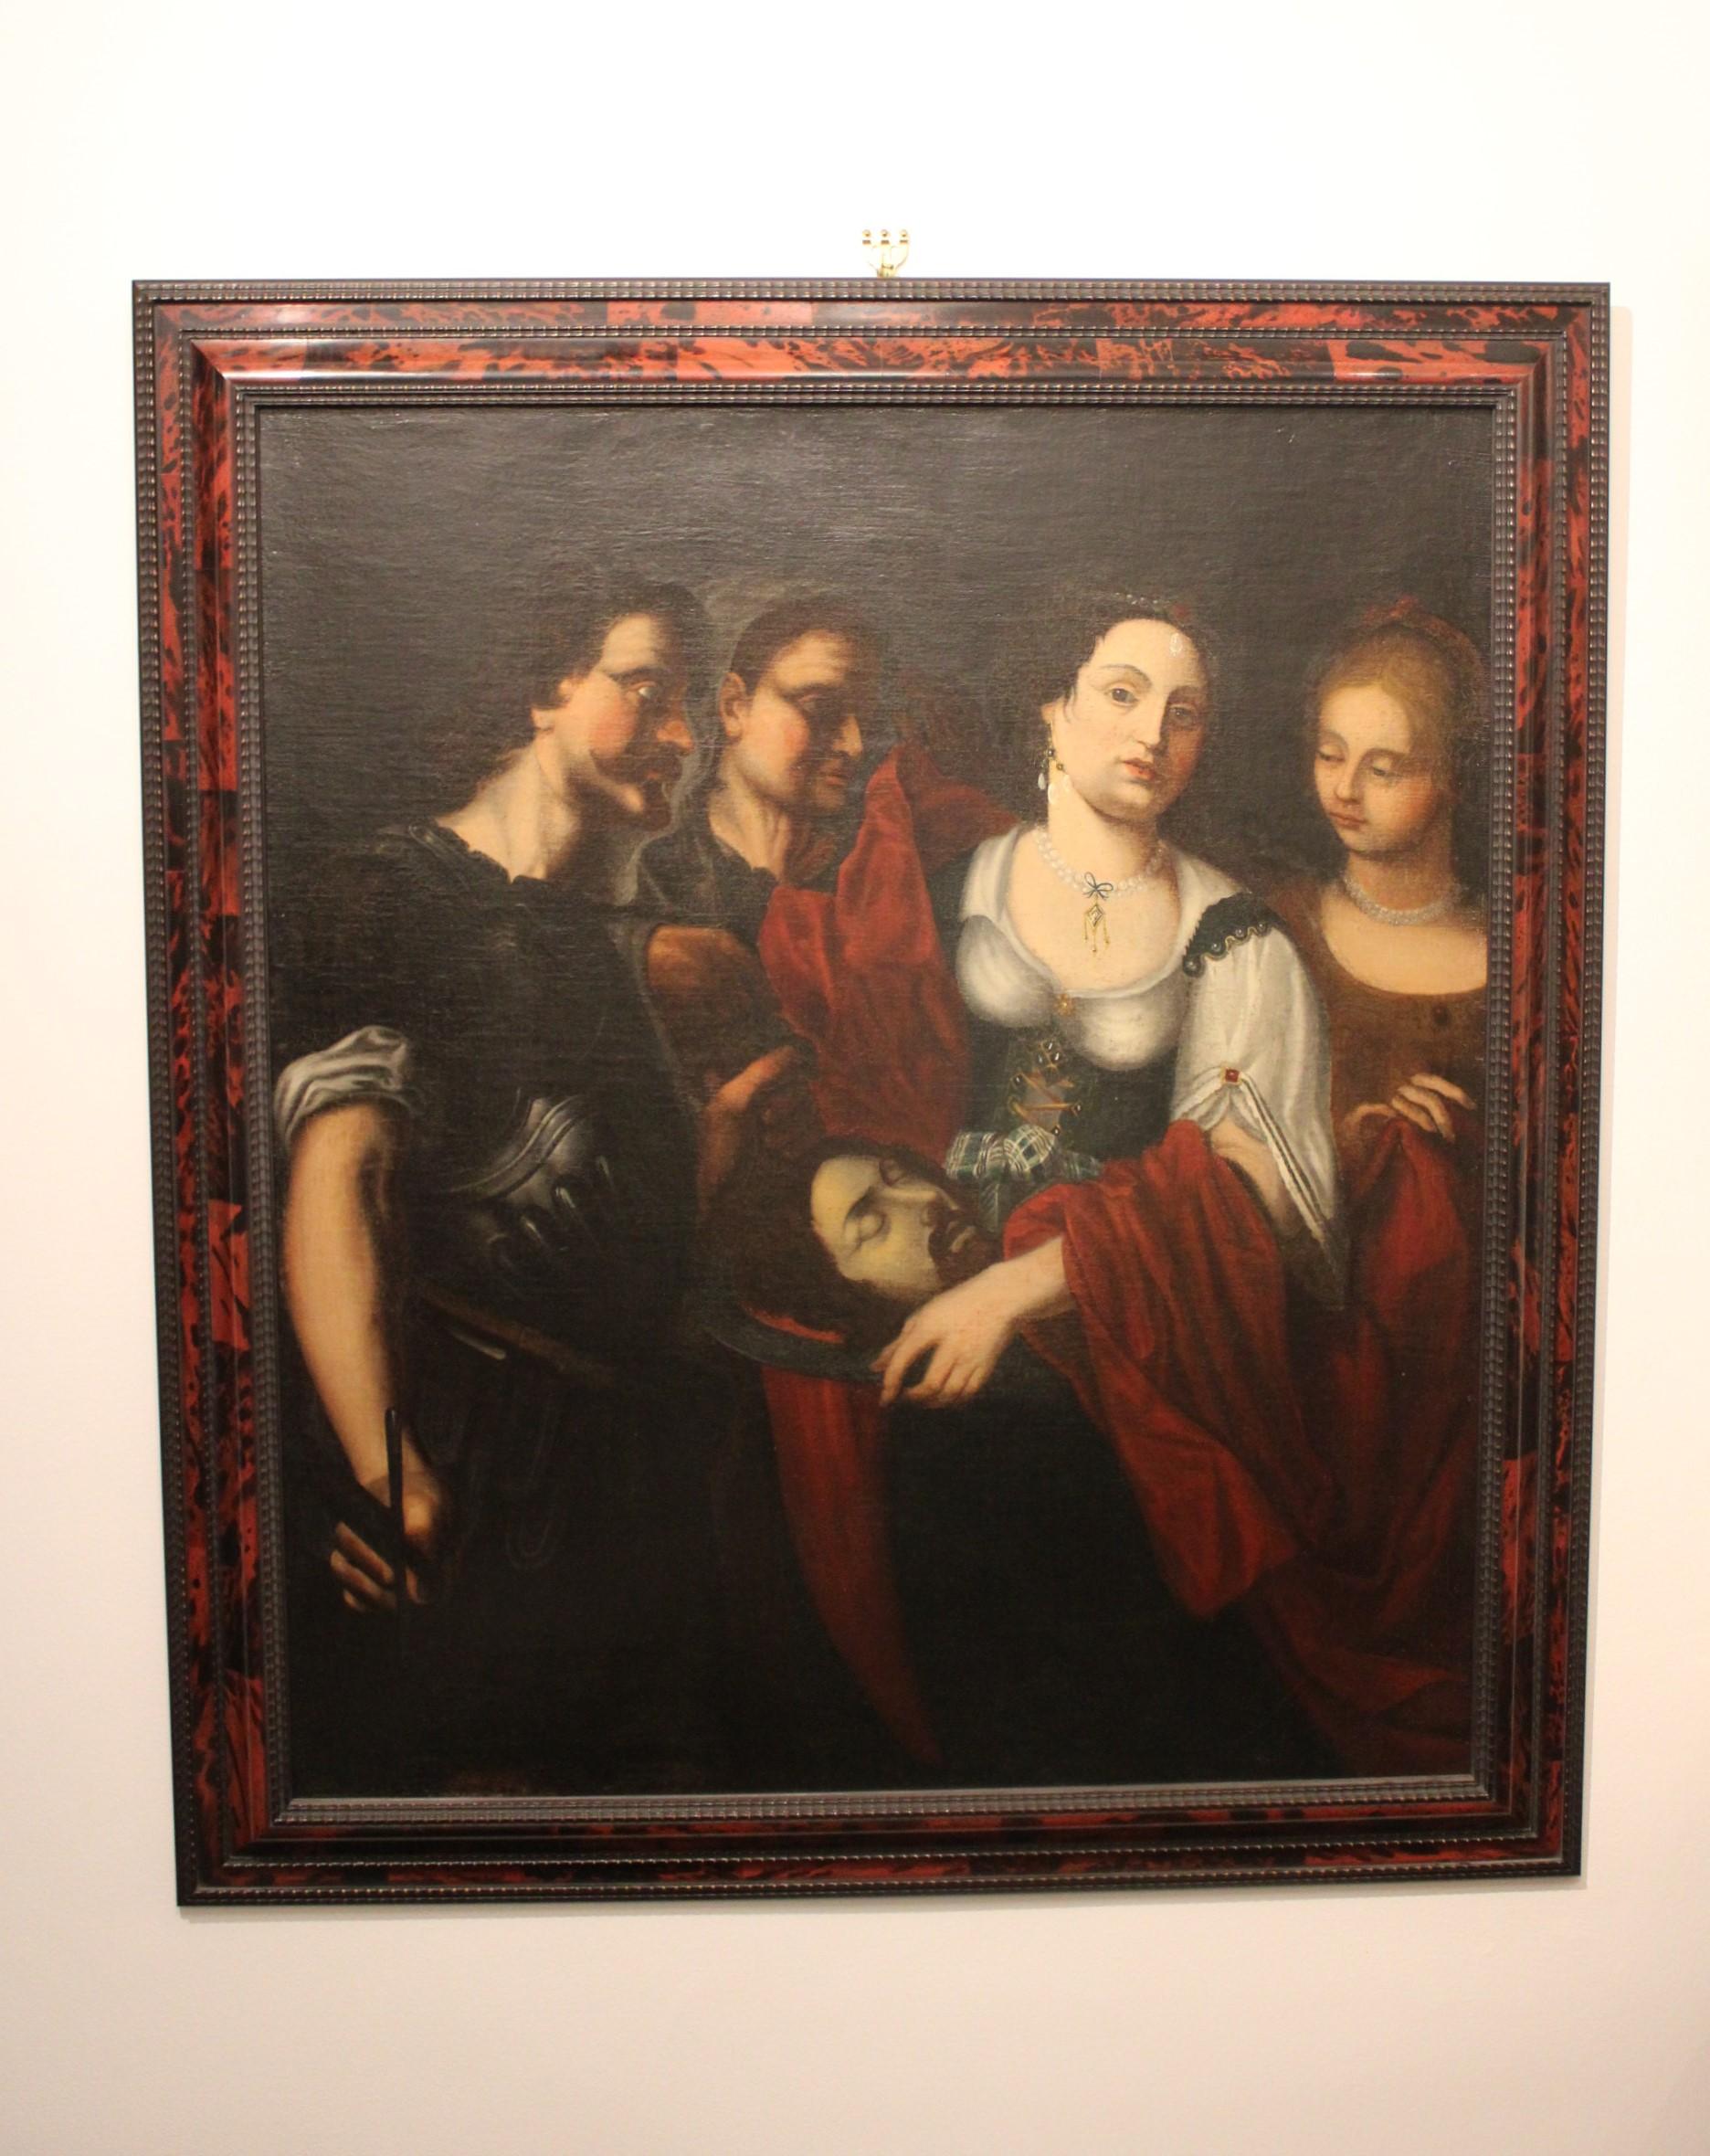 Salome empfängt das Haupt von Saint John the Baptist
Gemälde aus dem 17. Jahrhundert

Maße des Rahmens: 115 x 133 x 6 cm